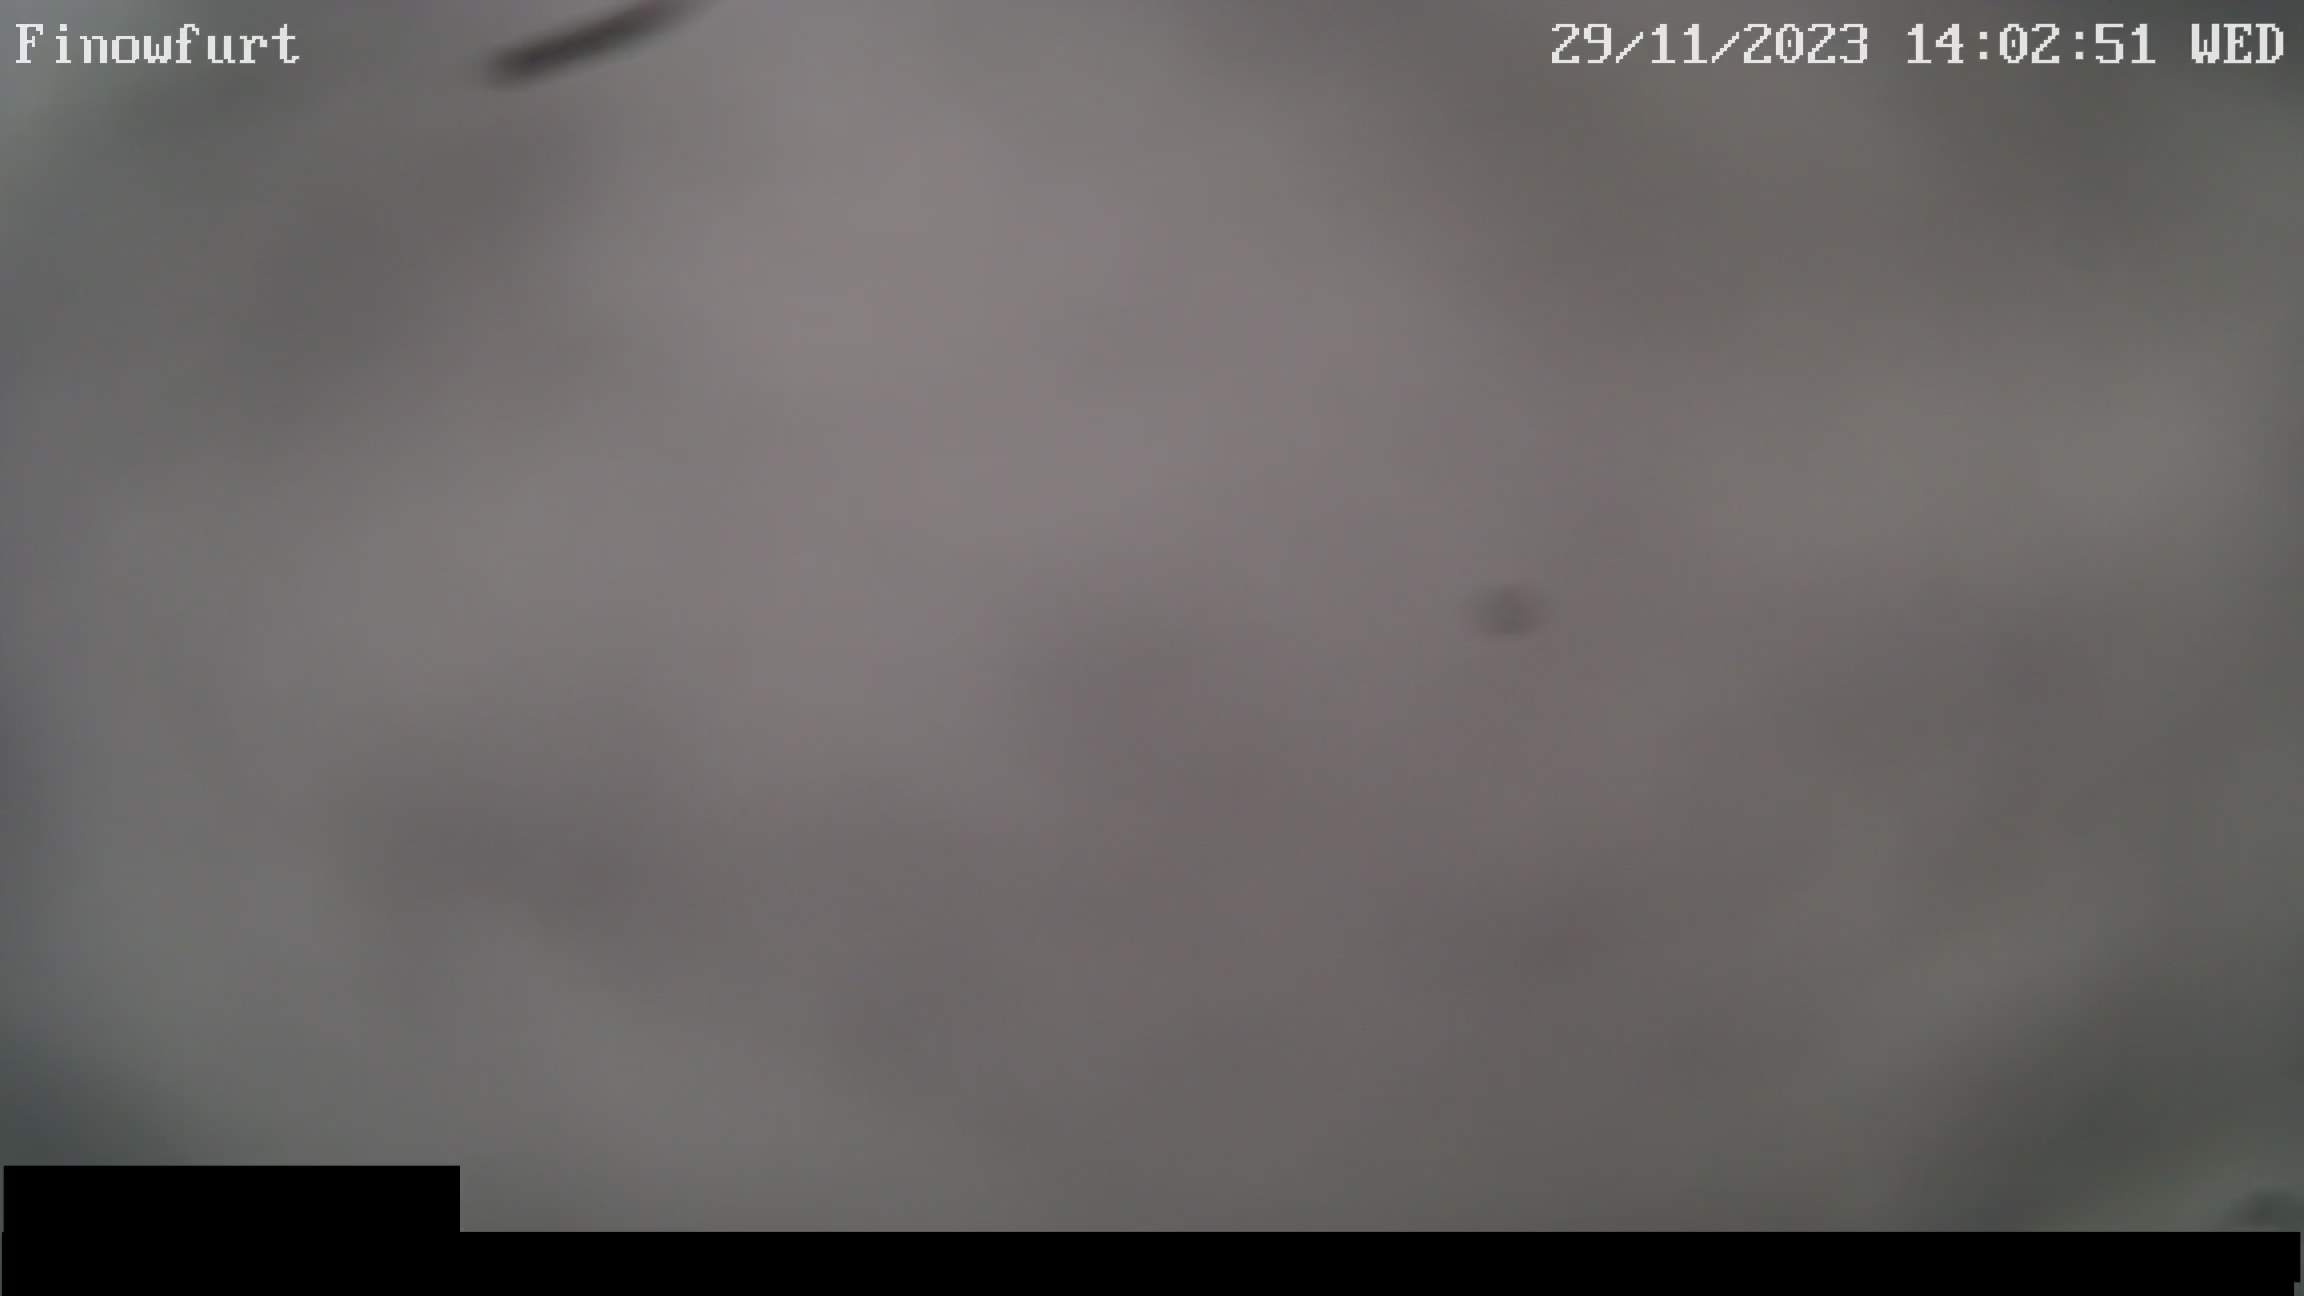 Webcam-Bild von 14 Uhr